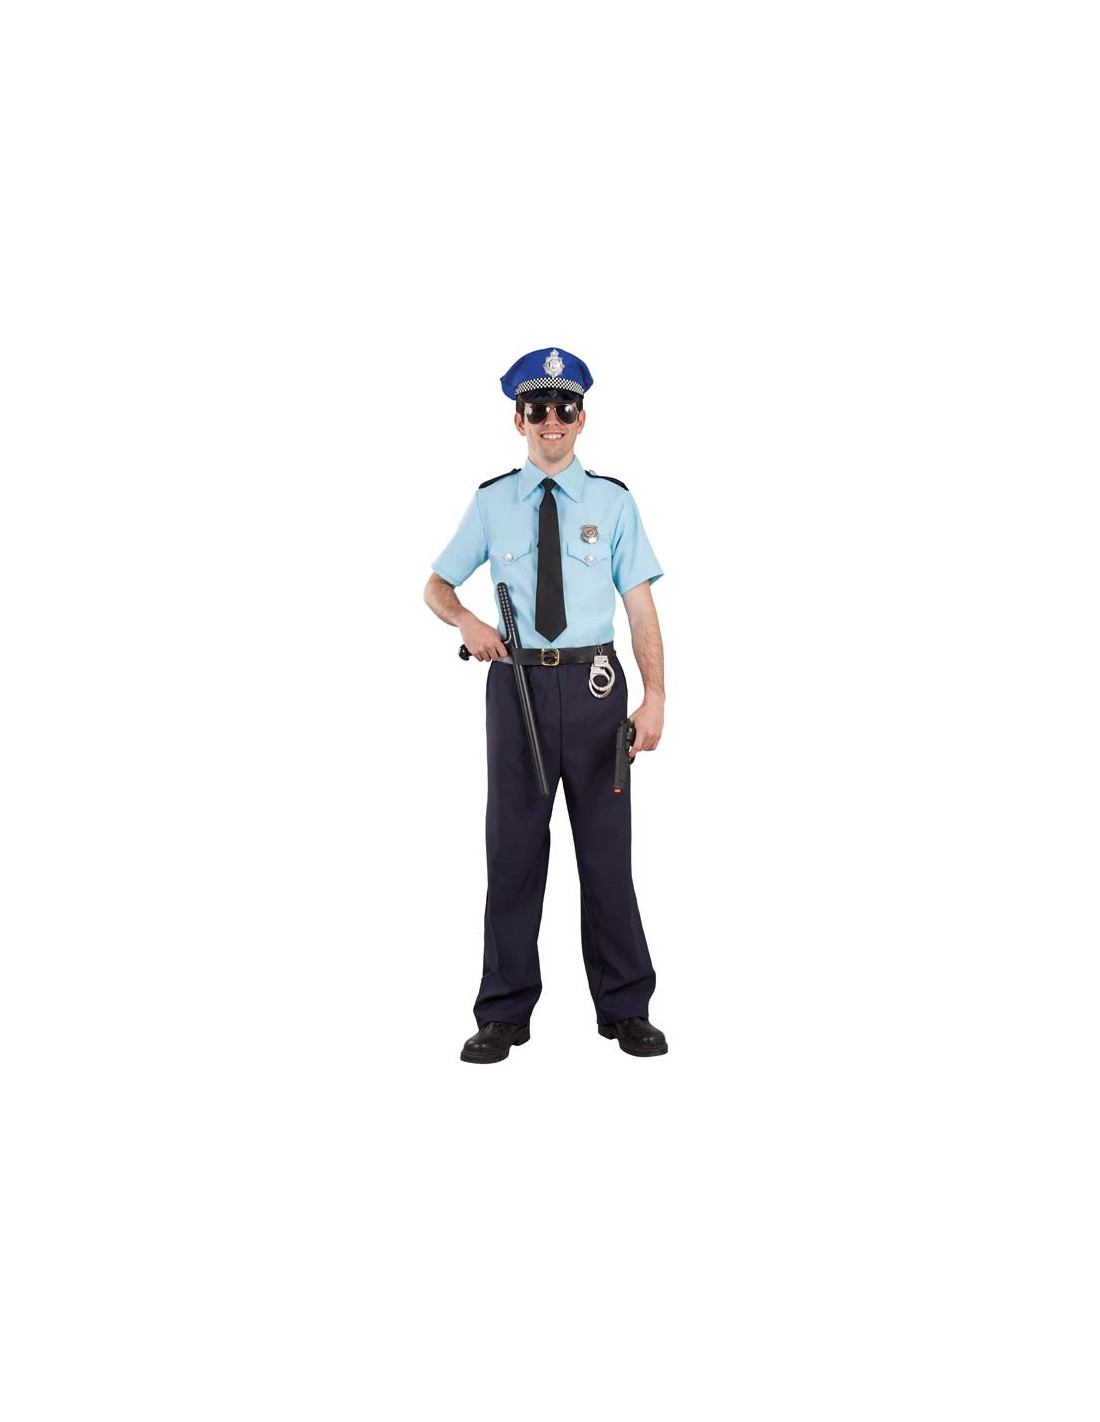 Disfraz de Policía para hombre